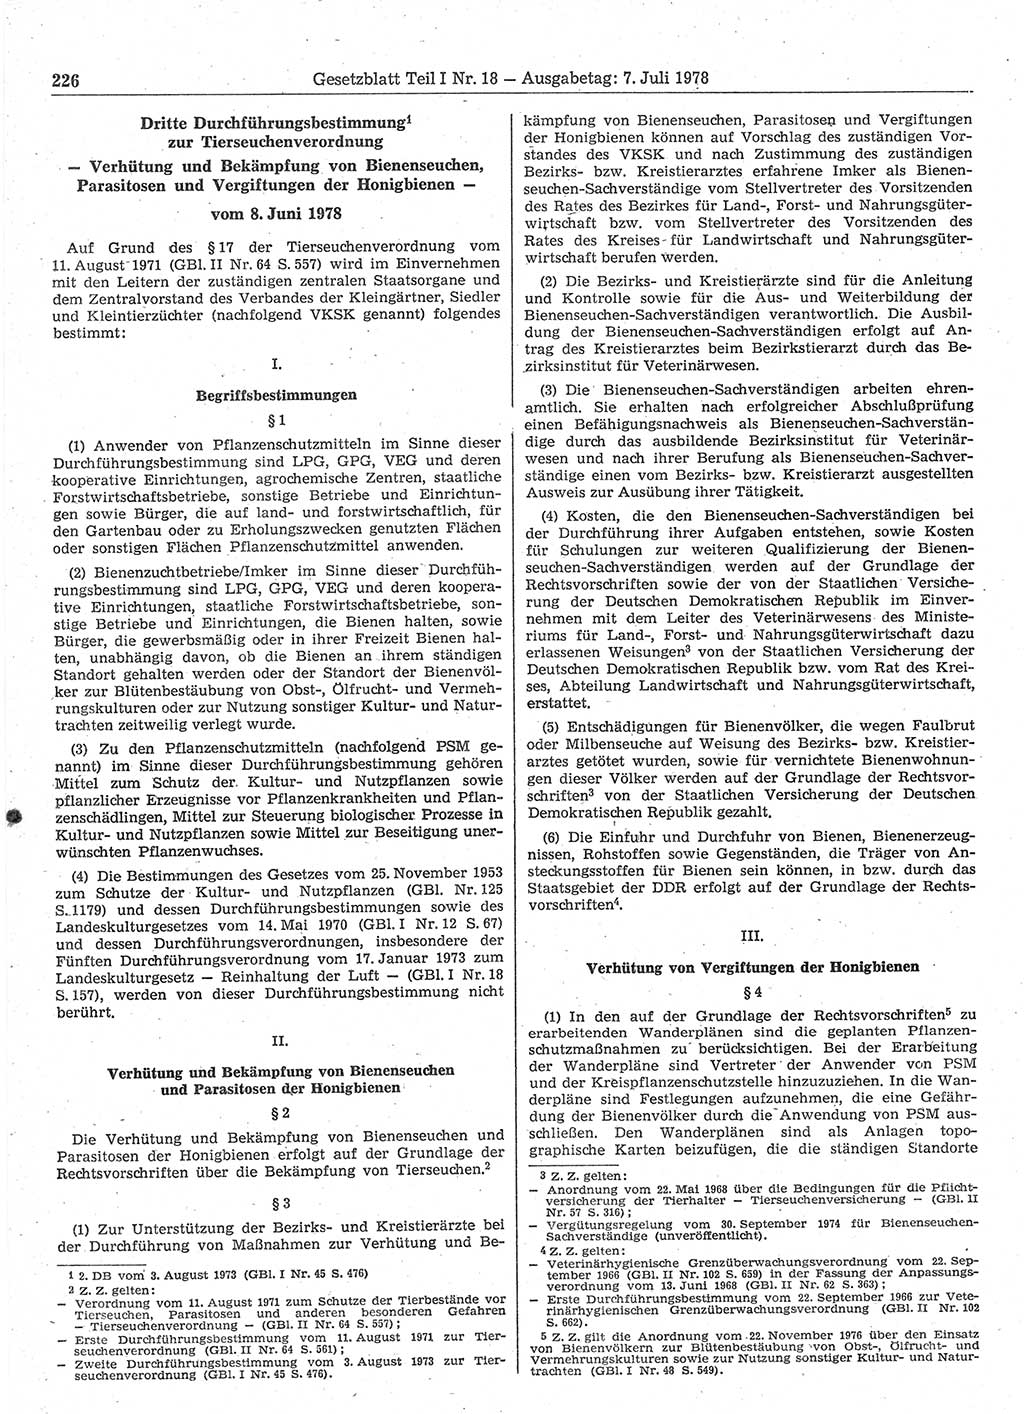 Gesetzblatt (GBl.) der Deutschen Demokratischen Republik (DDR) Teil Ⅰ 1978, Seite 226 (GBl. DDR Ⅰ 1978, S. 226)